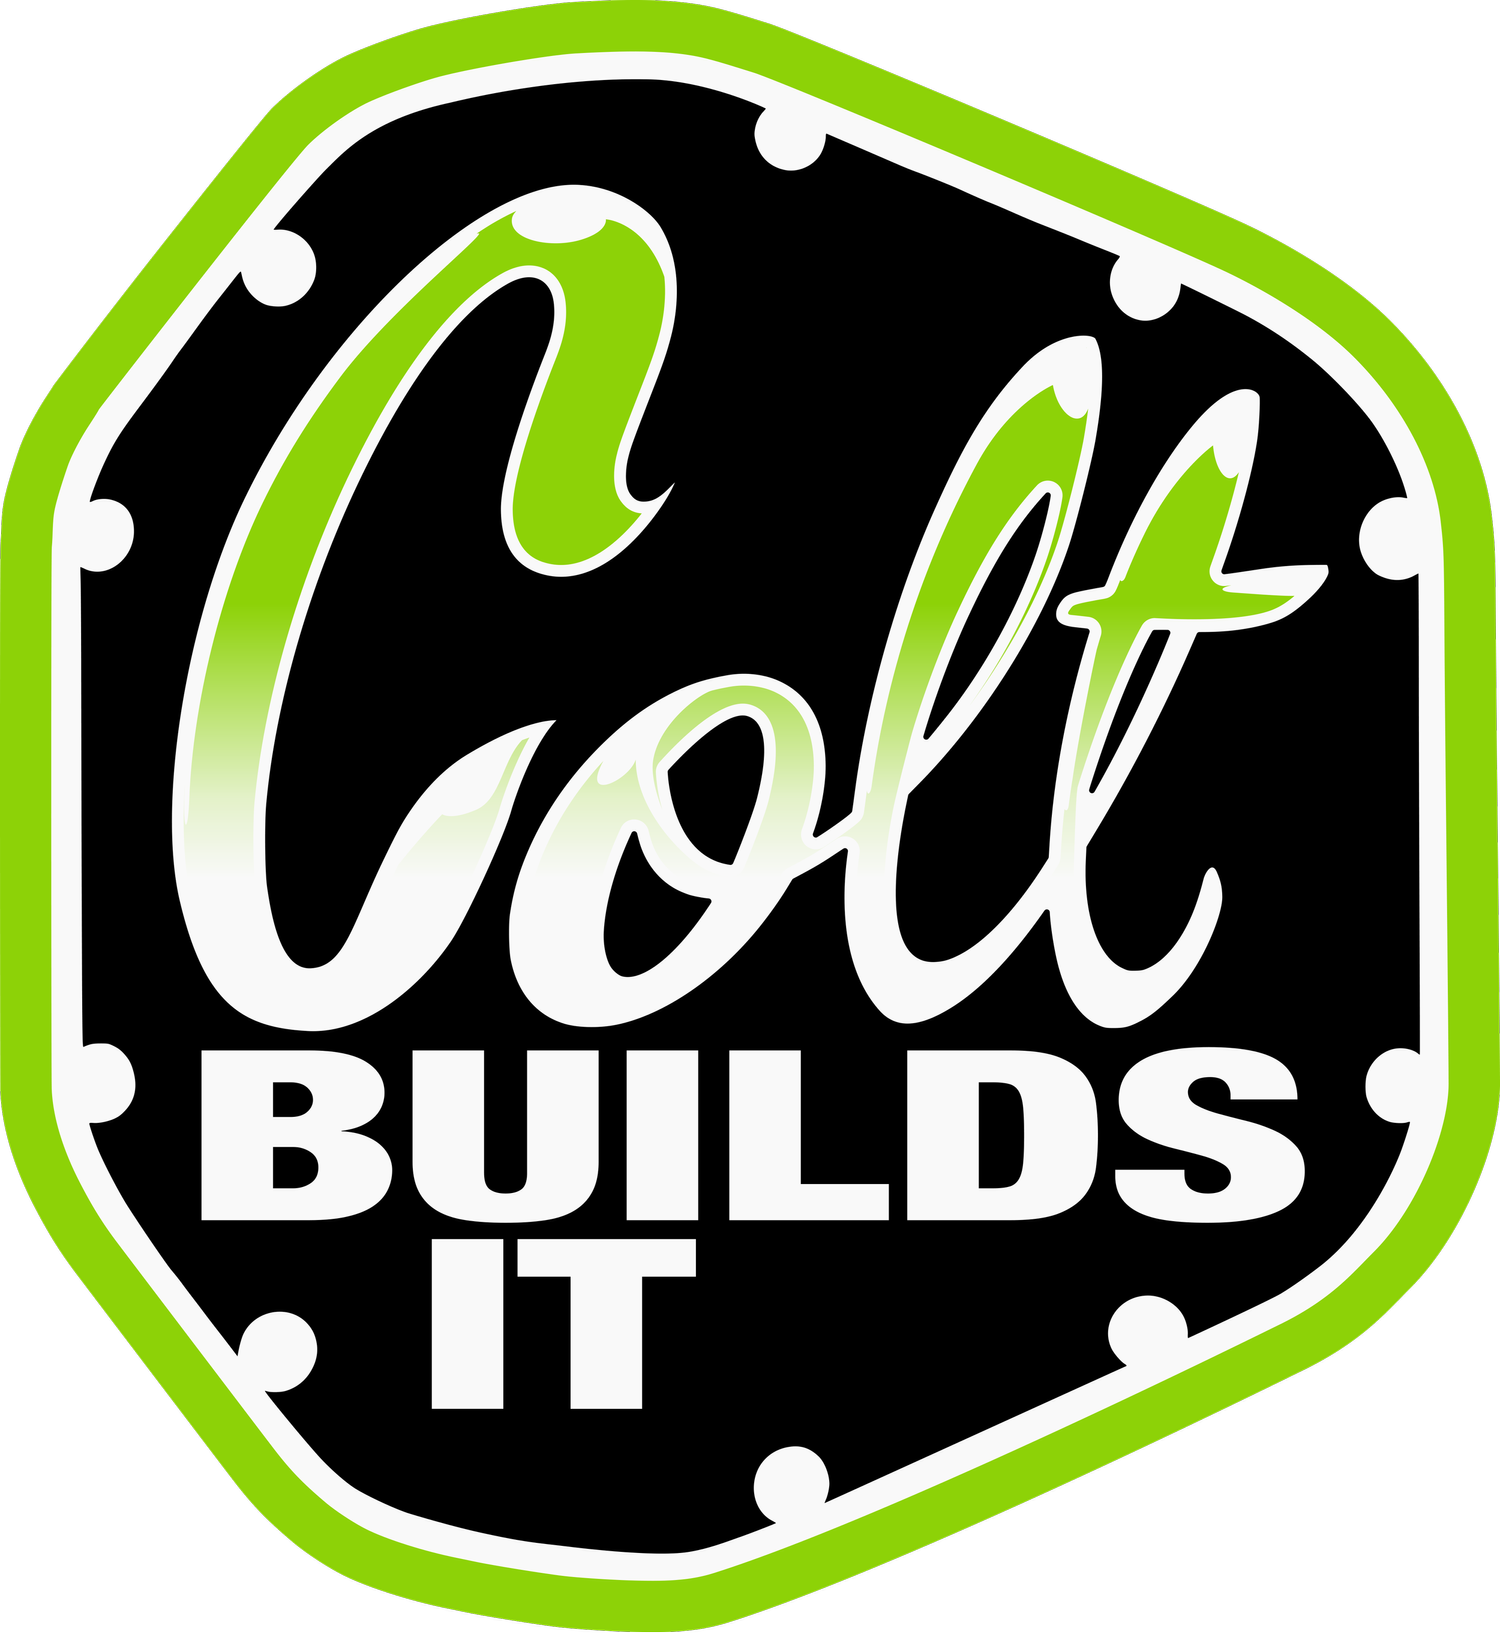 Colt Builds It